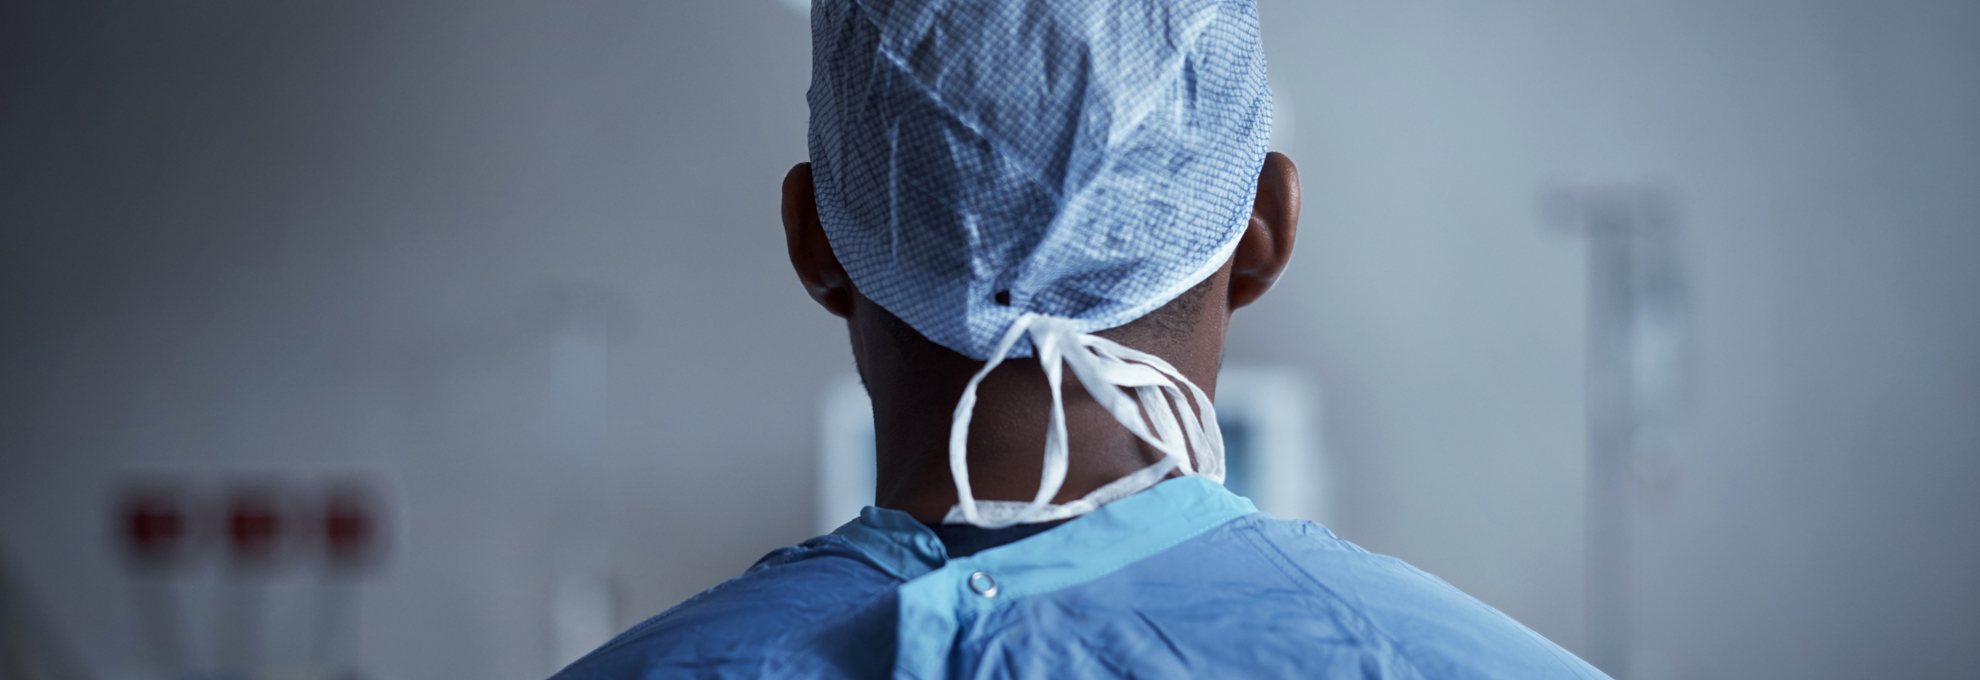 Electrofisiólogo con un pijama quirúrgico azul en el quirófano de un hospital